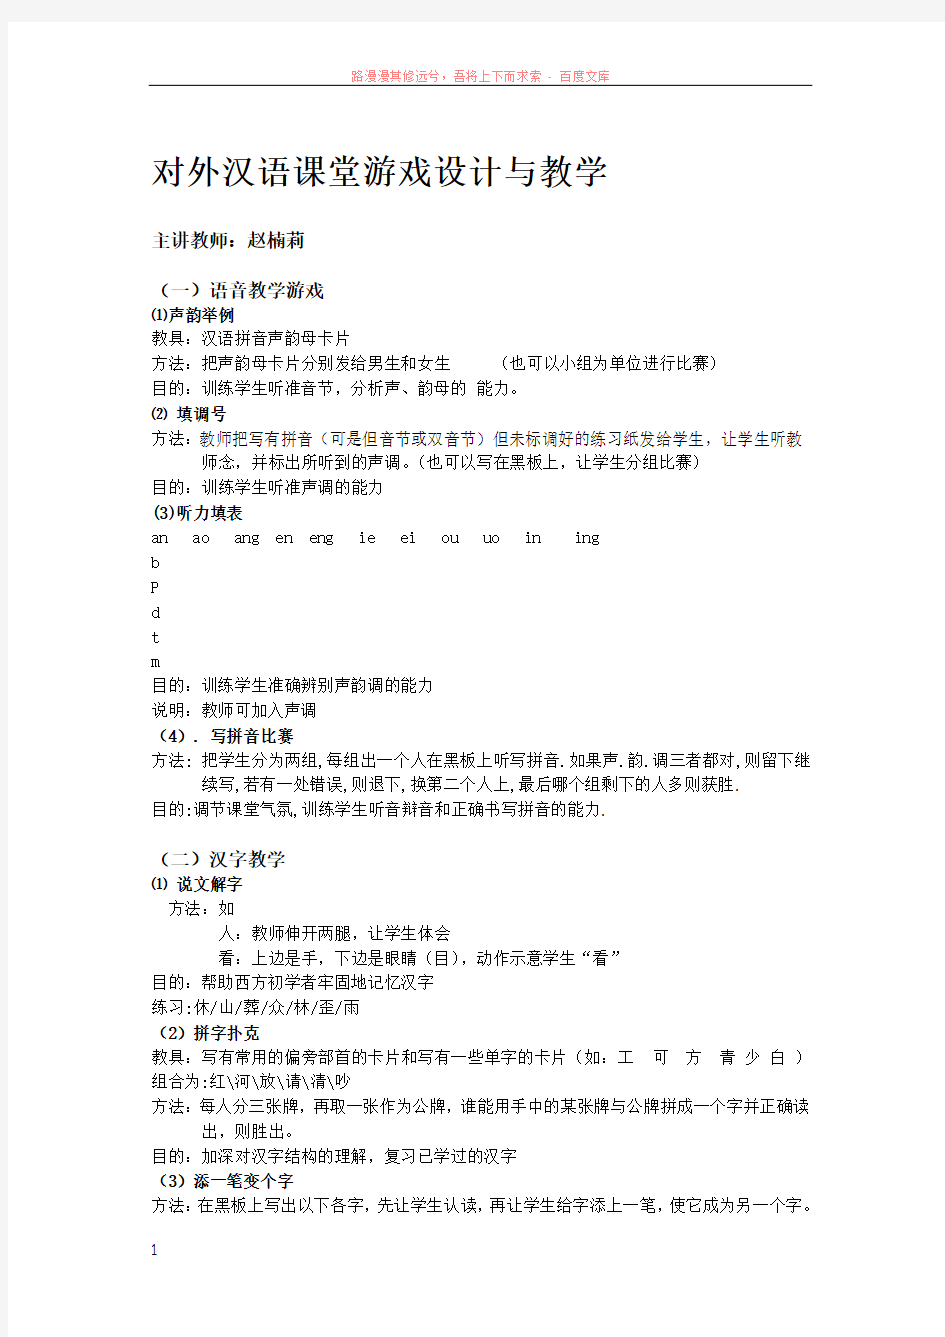 对外汉语课堂游戏设计与教学 (1)